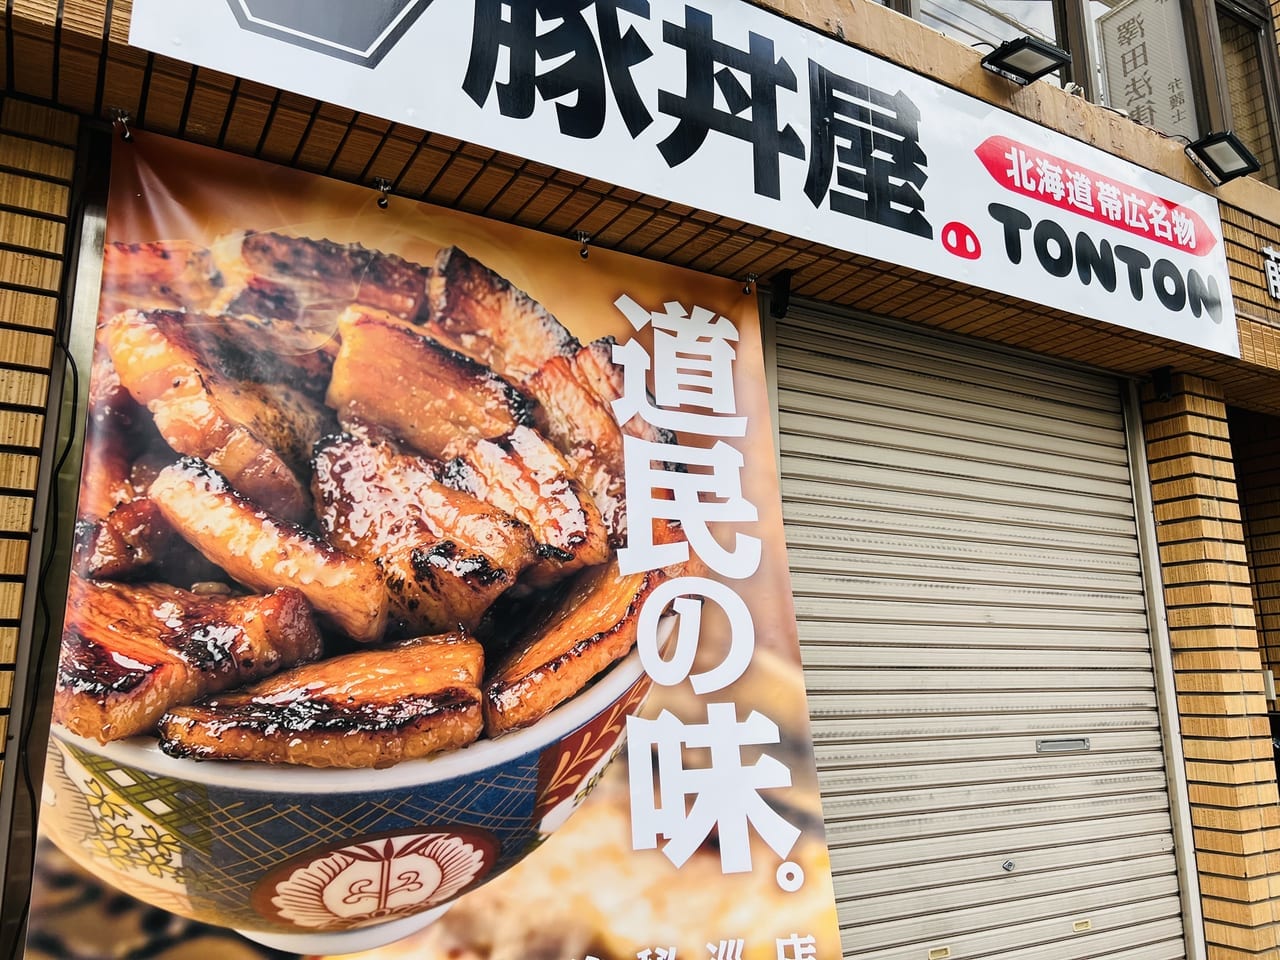 「元祖豚丼屋TONTON 高知県庁前店」の外観アップ